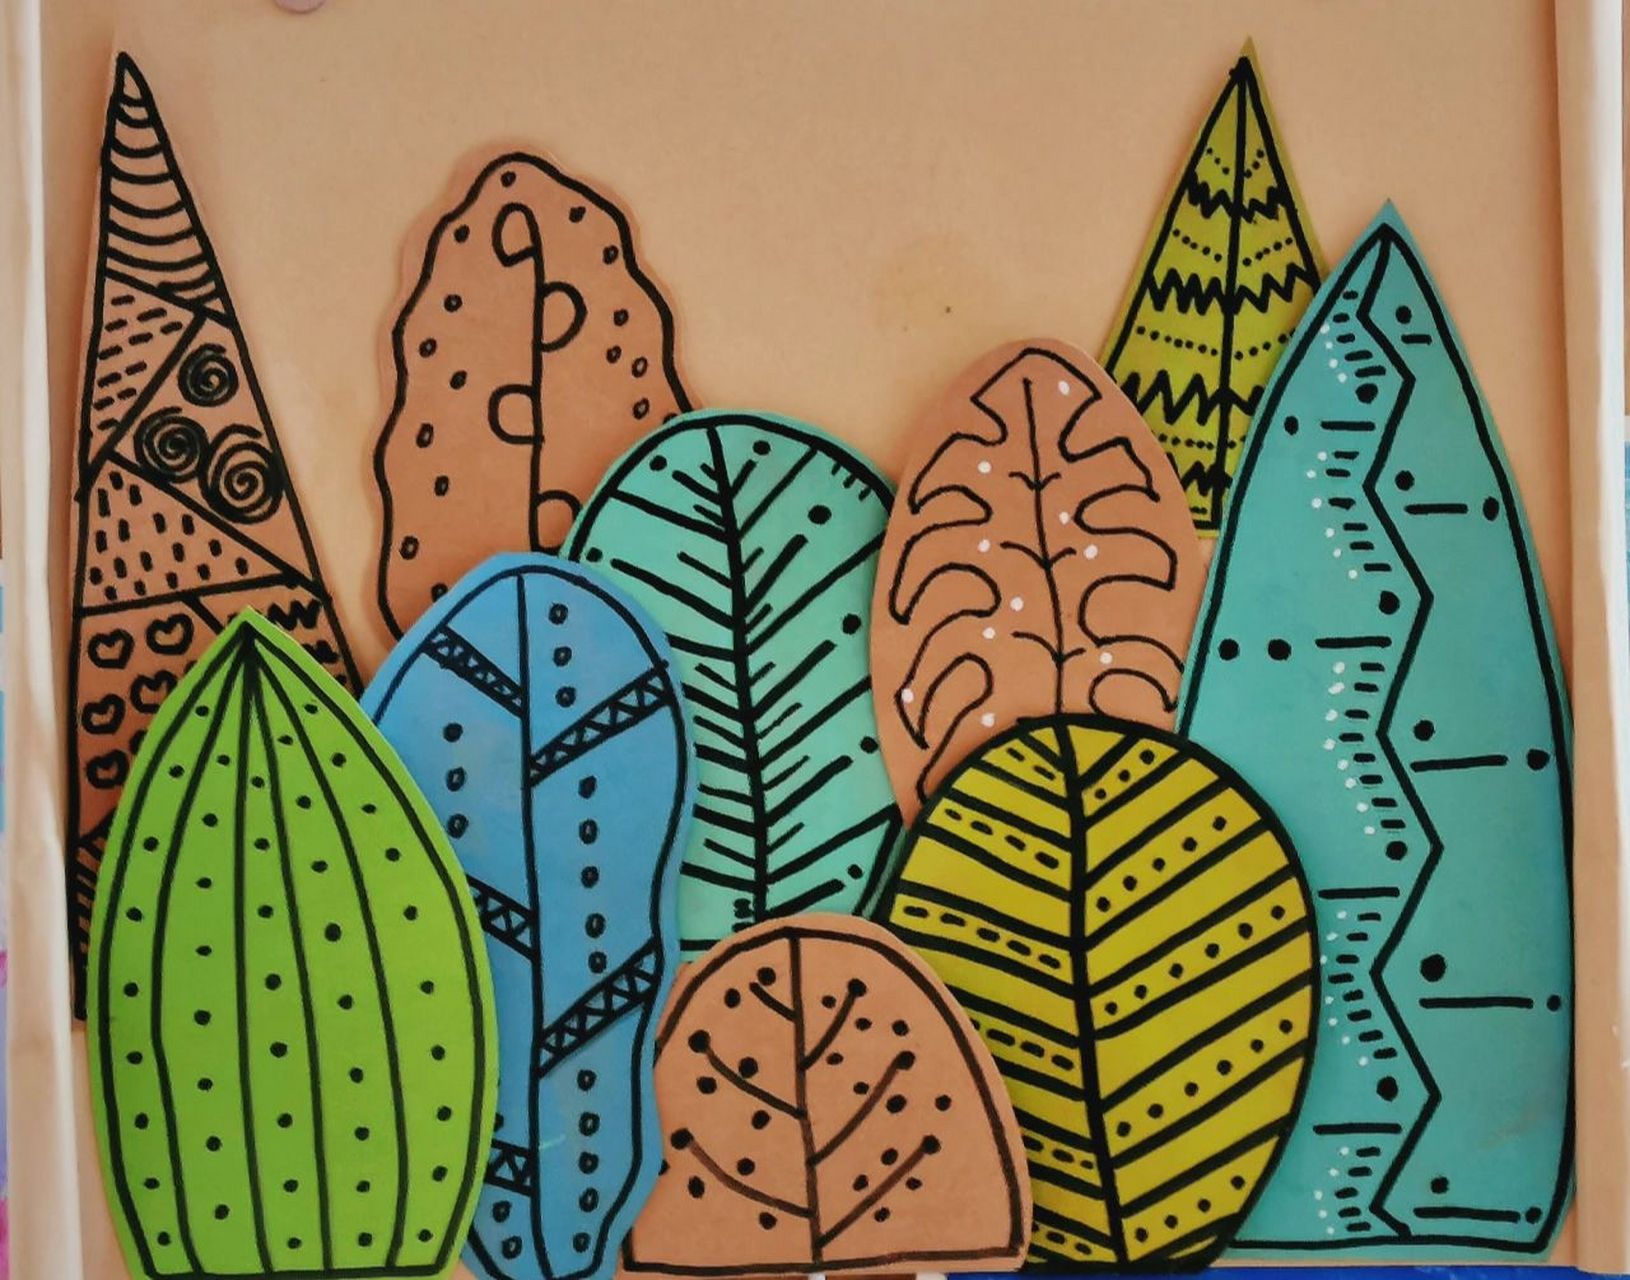 线描画 树叶装饰 美工区 幼儿园环创 线描画 树叶装饰 美工区 幼儿园